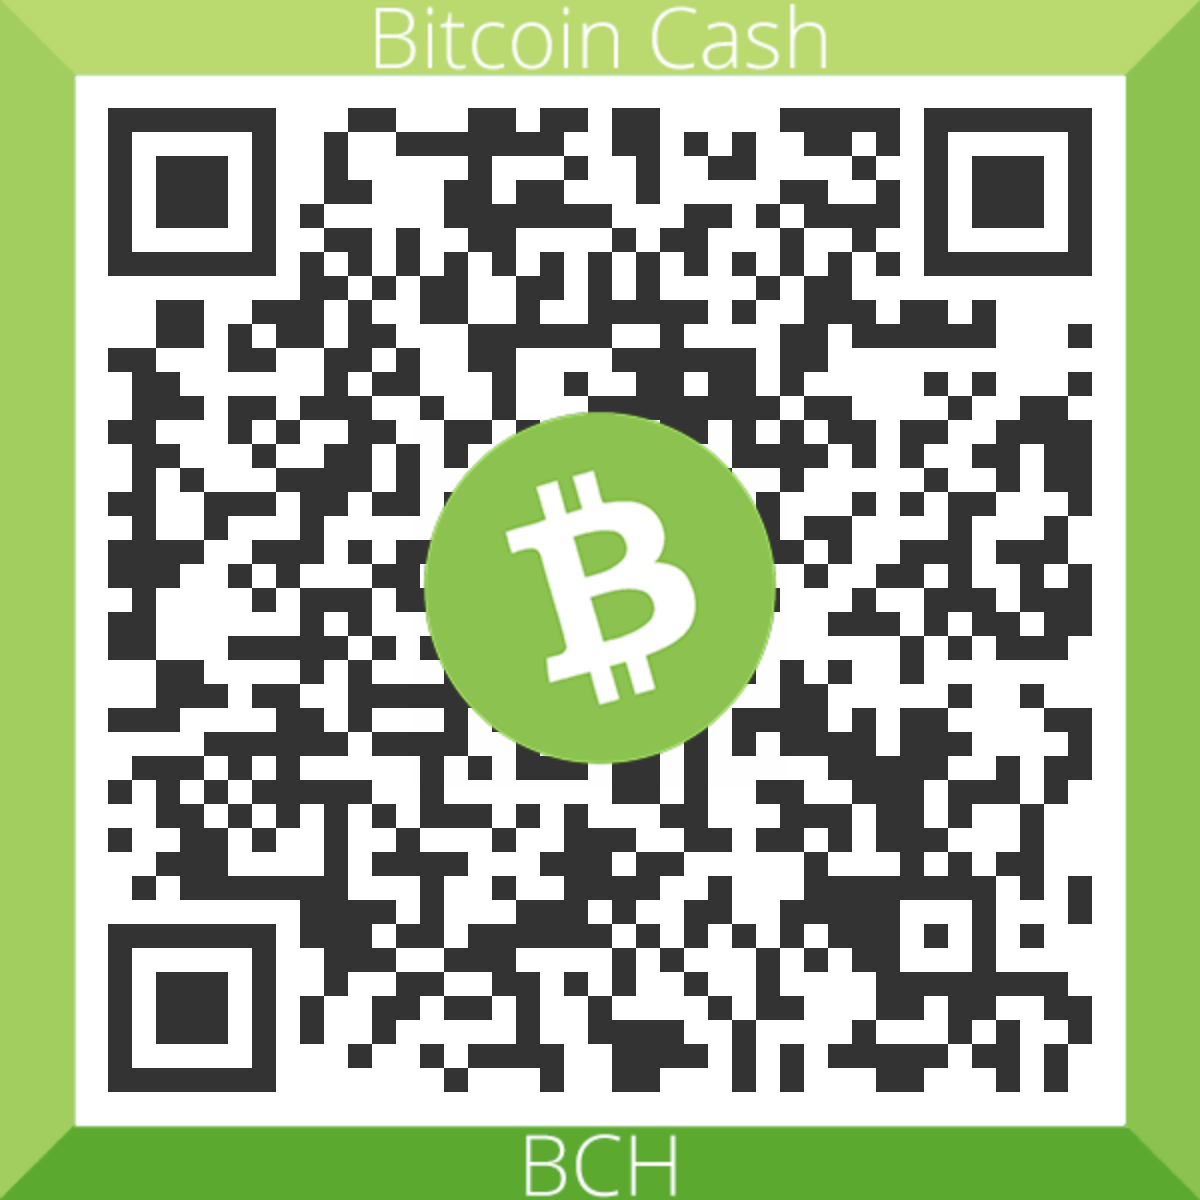 bitcoincash:qqm66uv6433af7cyd4cu63h5368h44a98qc2p23wjt